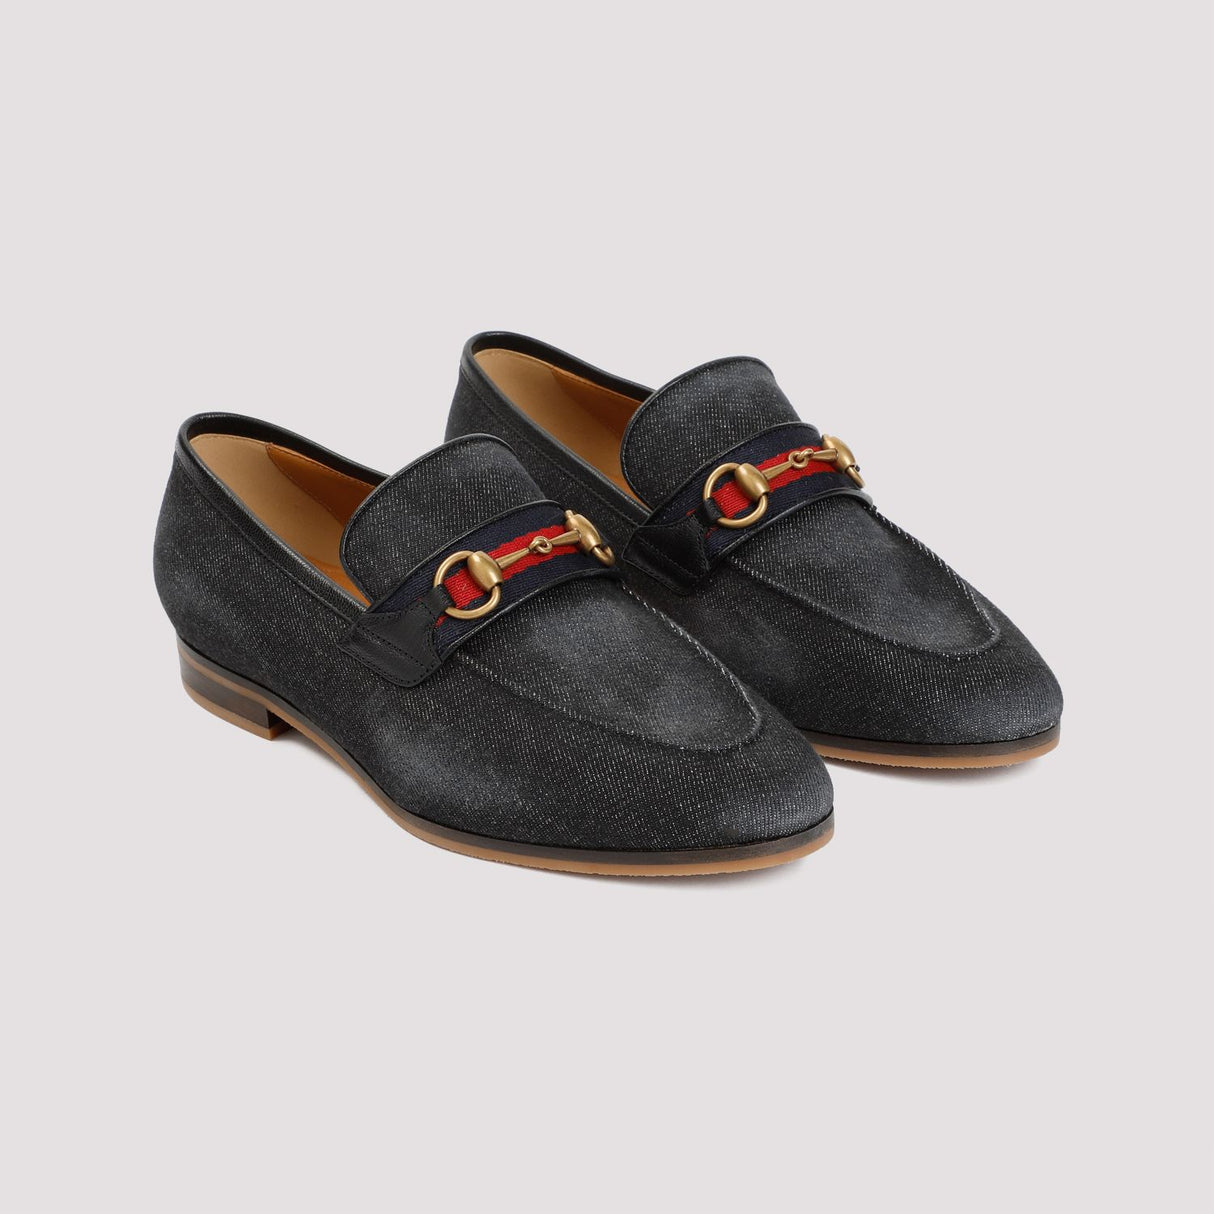 Giày moccasin nam bằng vải cotton đen dành cho mùa Xuân-Hè 24